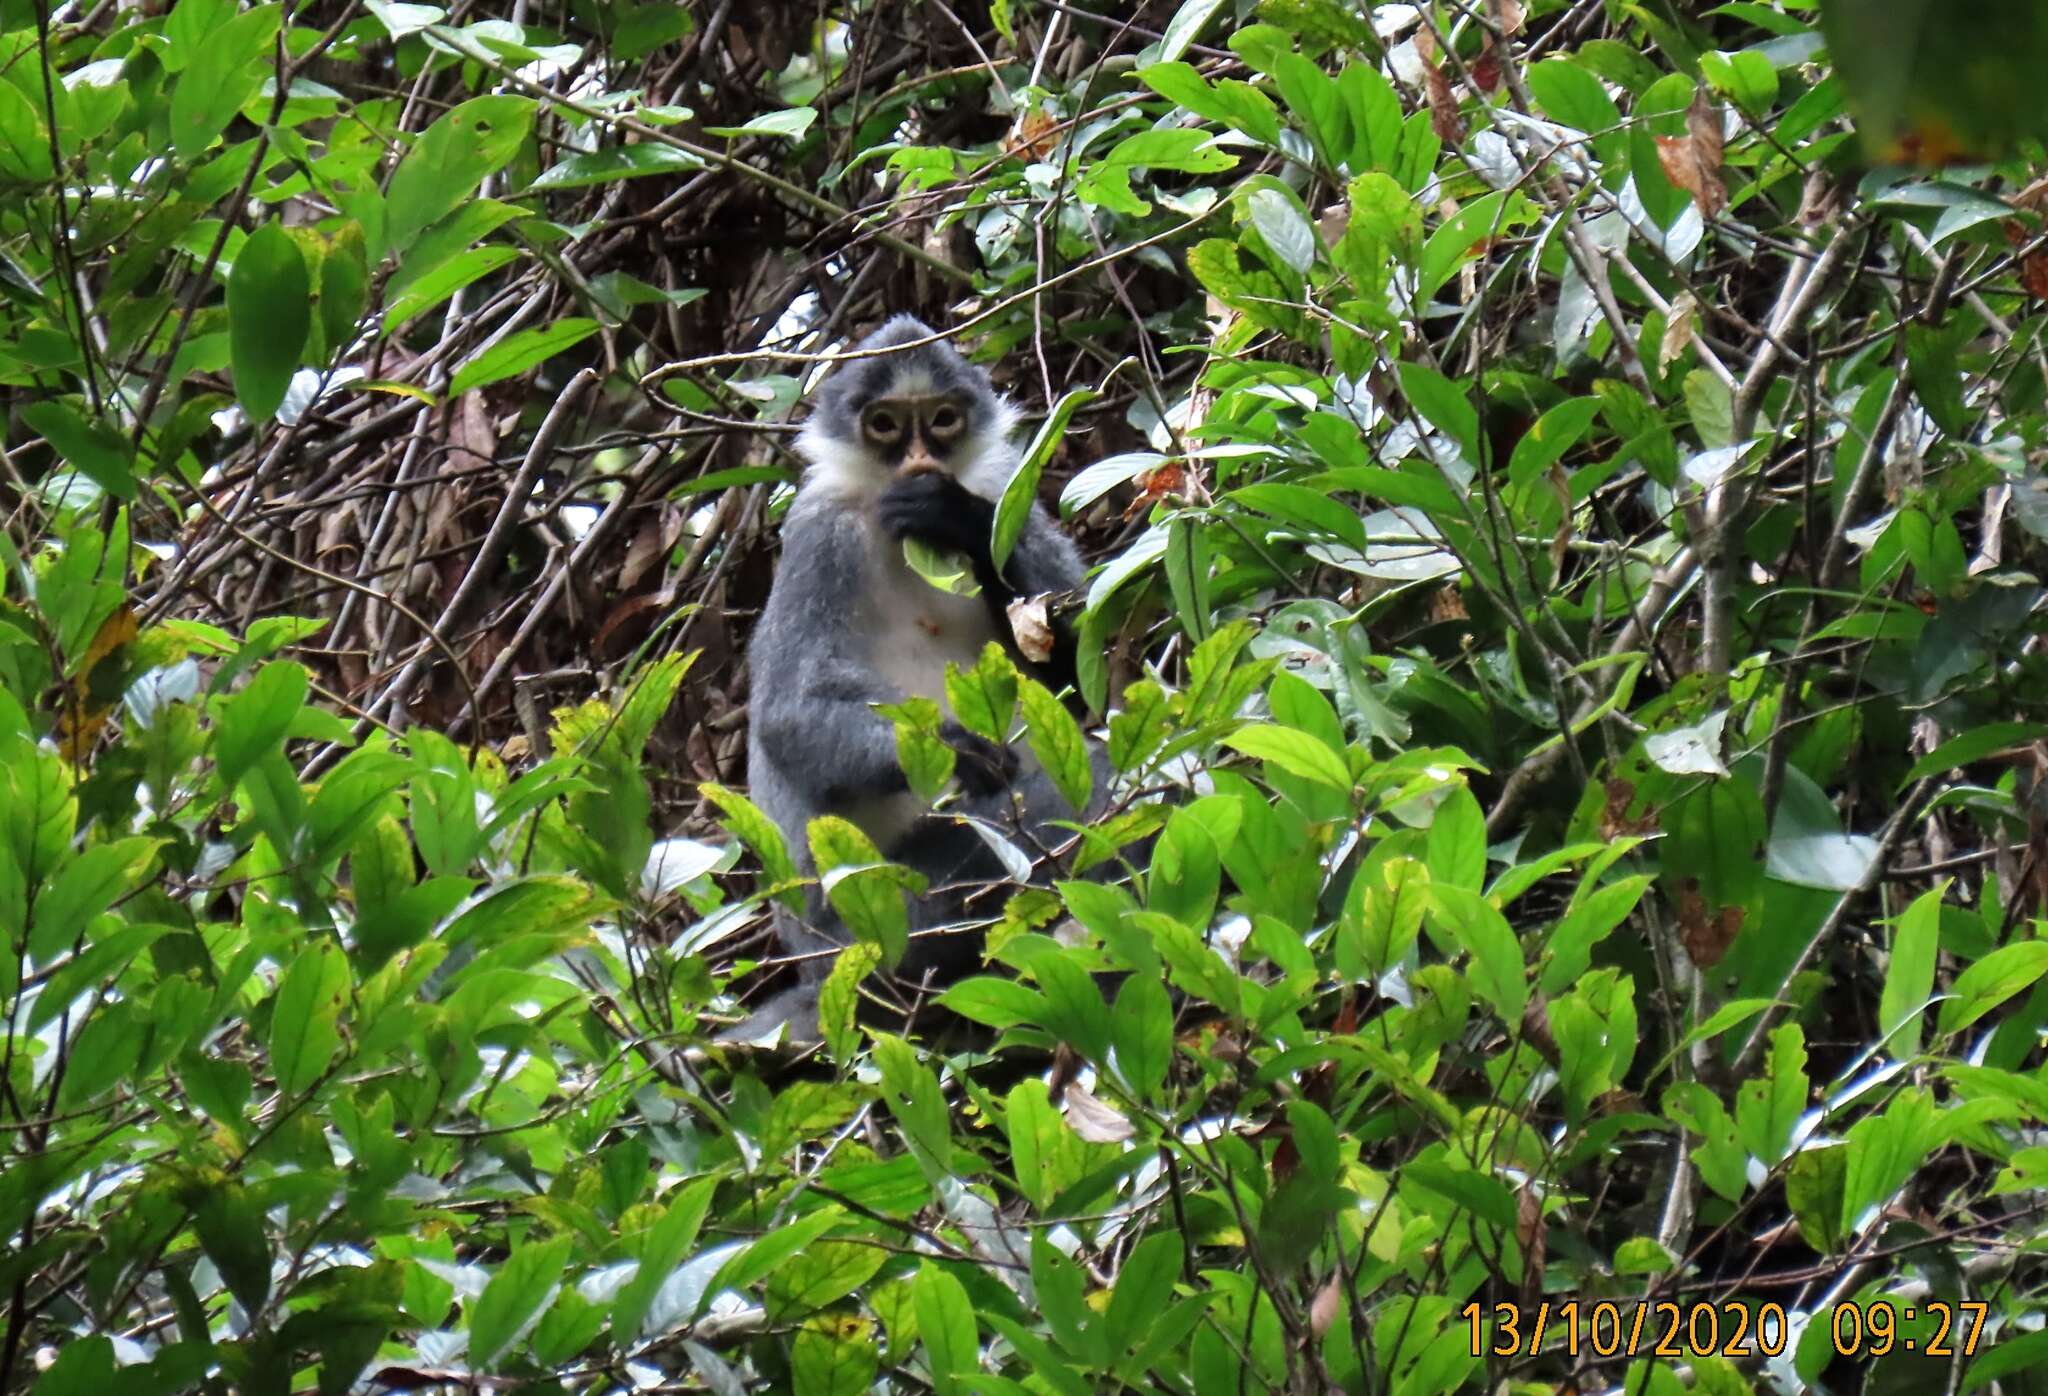 Image of Gray Leaf Monkey